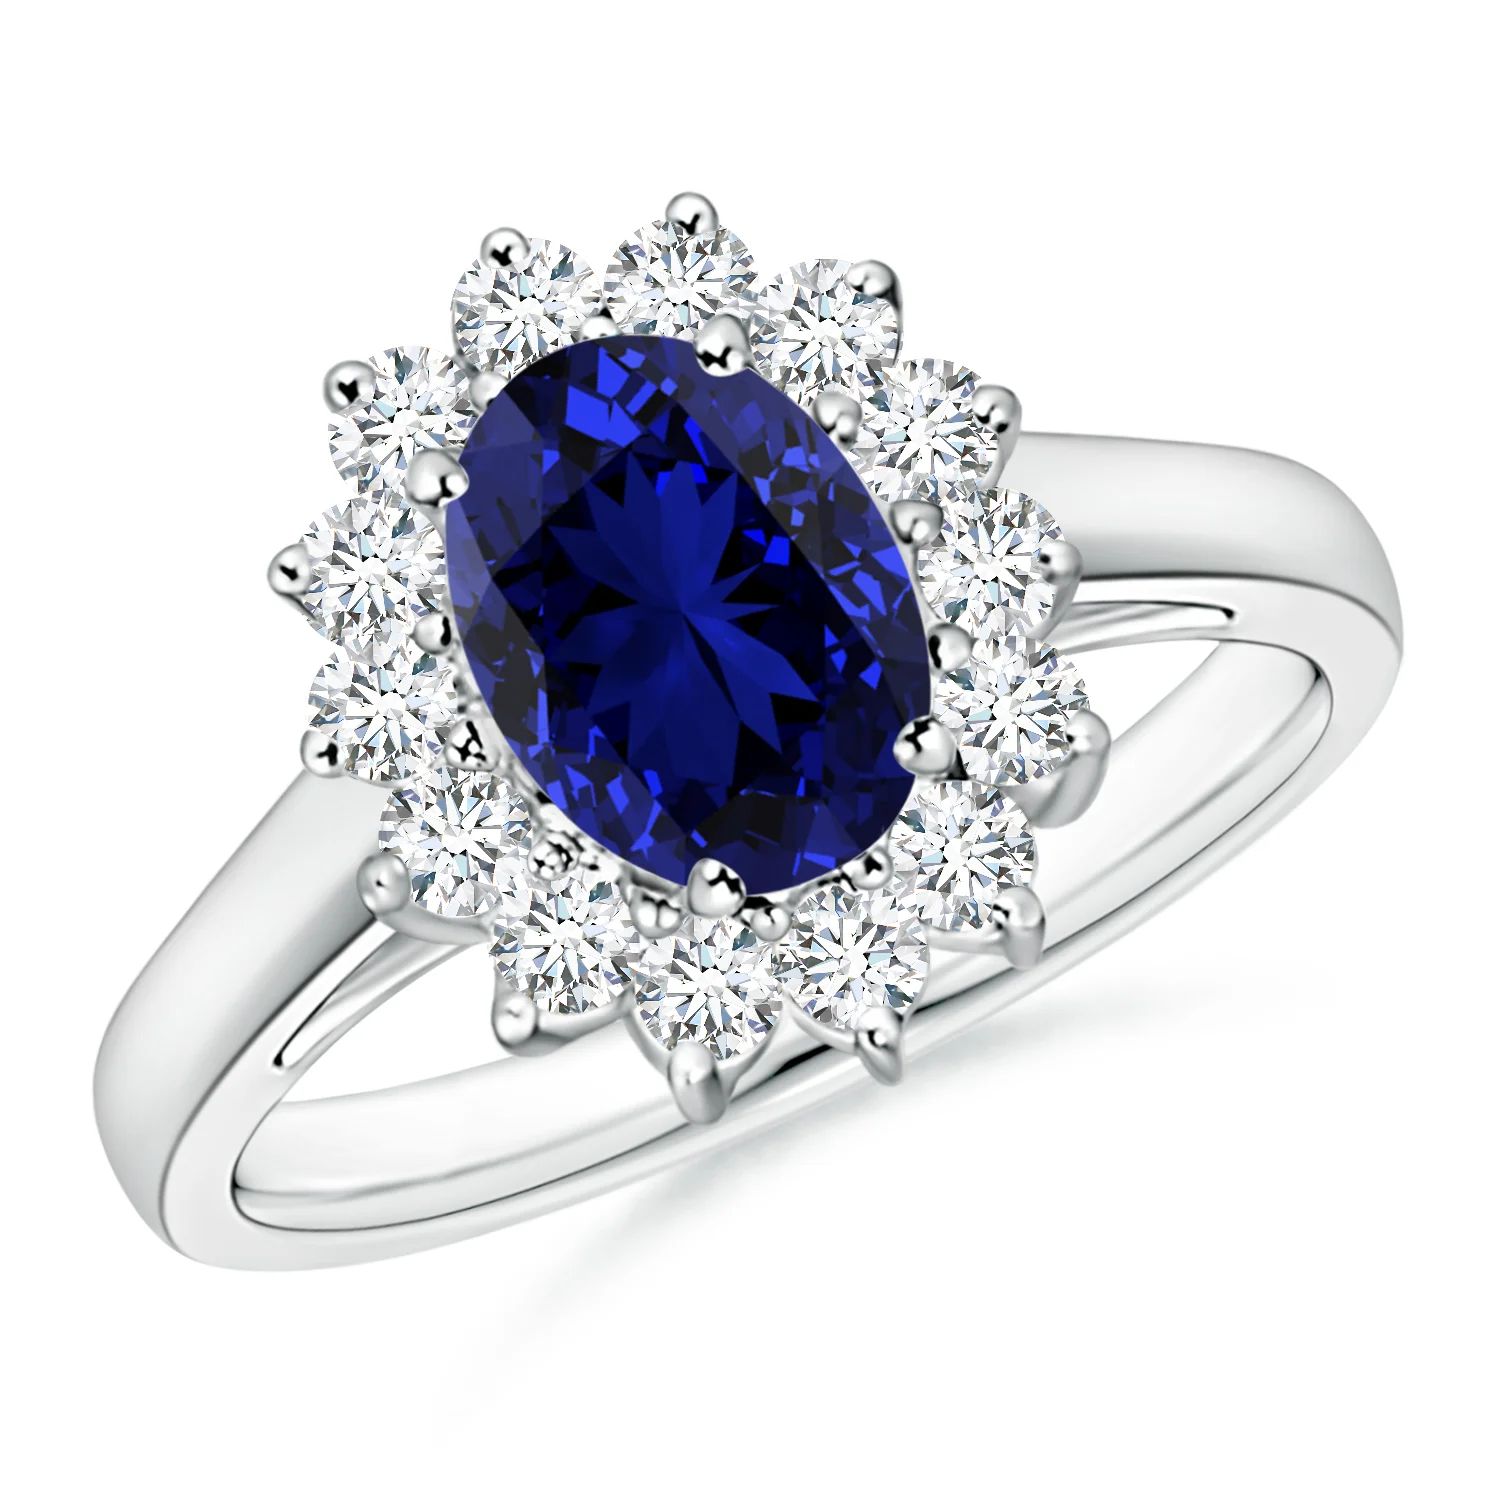 Lab-Grown Princess Diana Inspired Blue Sapphire Ring with Lab Diamond Halo | Angara | Angara US